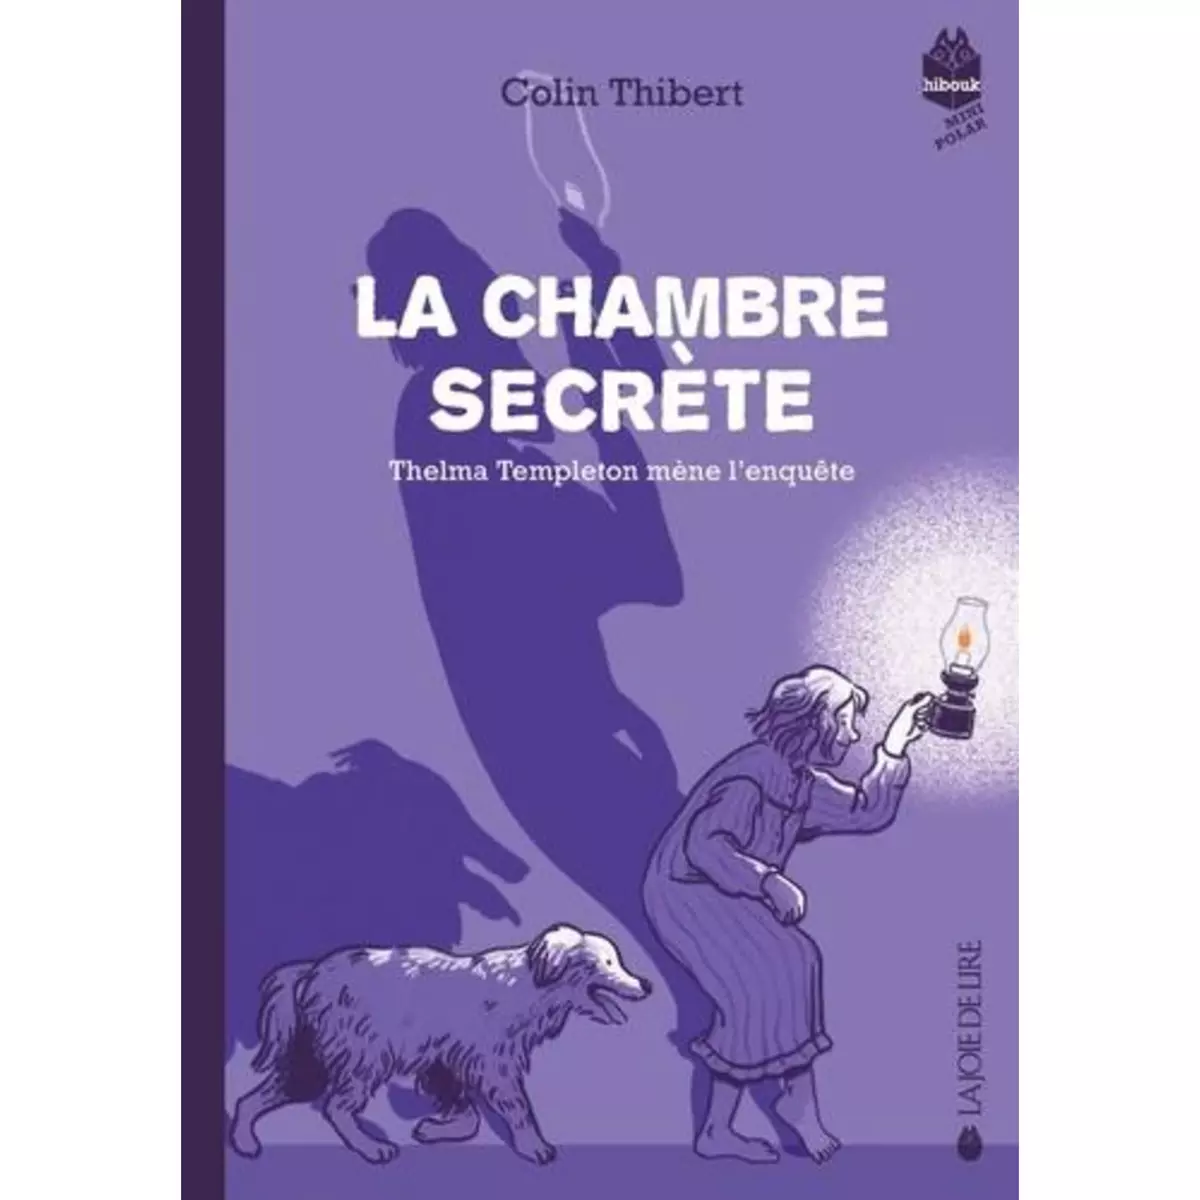  THELMA TEMPLETON MENE L'ENQUETE TOME 2 : LA CHAMBRE SECRETE, Thibert Colin